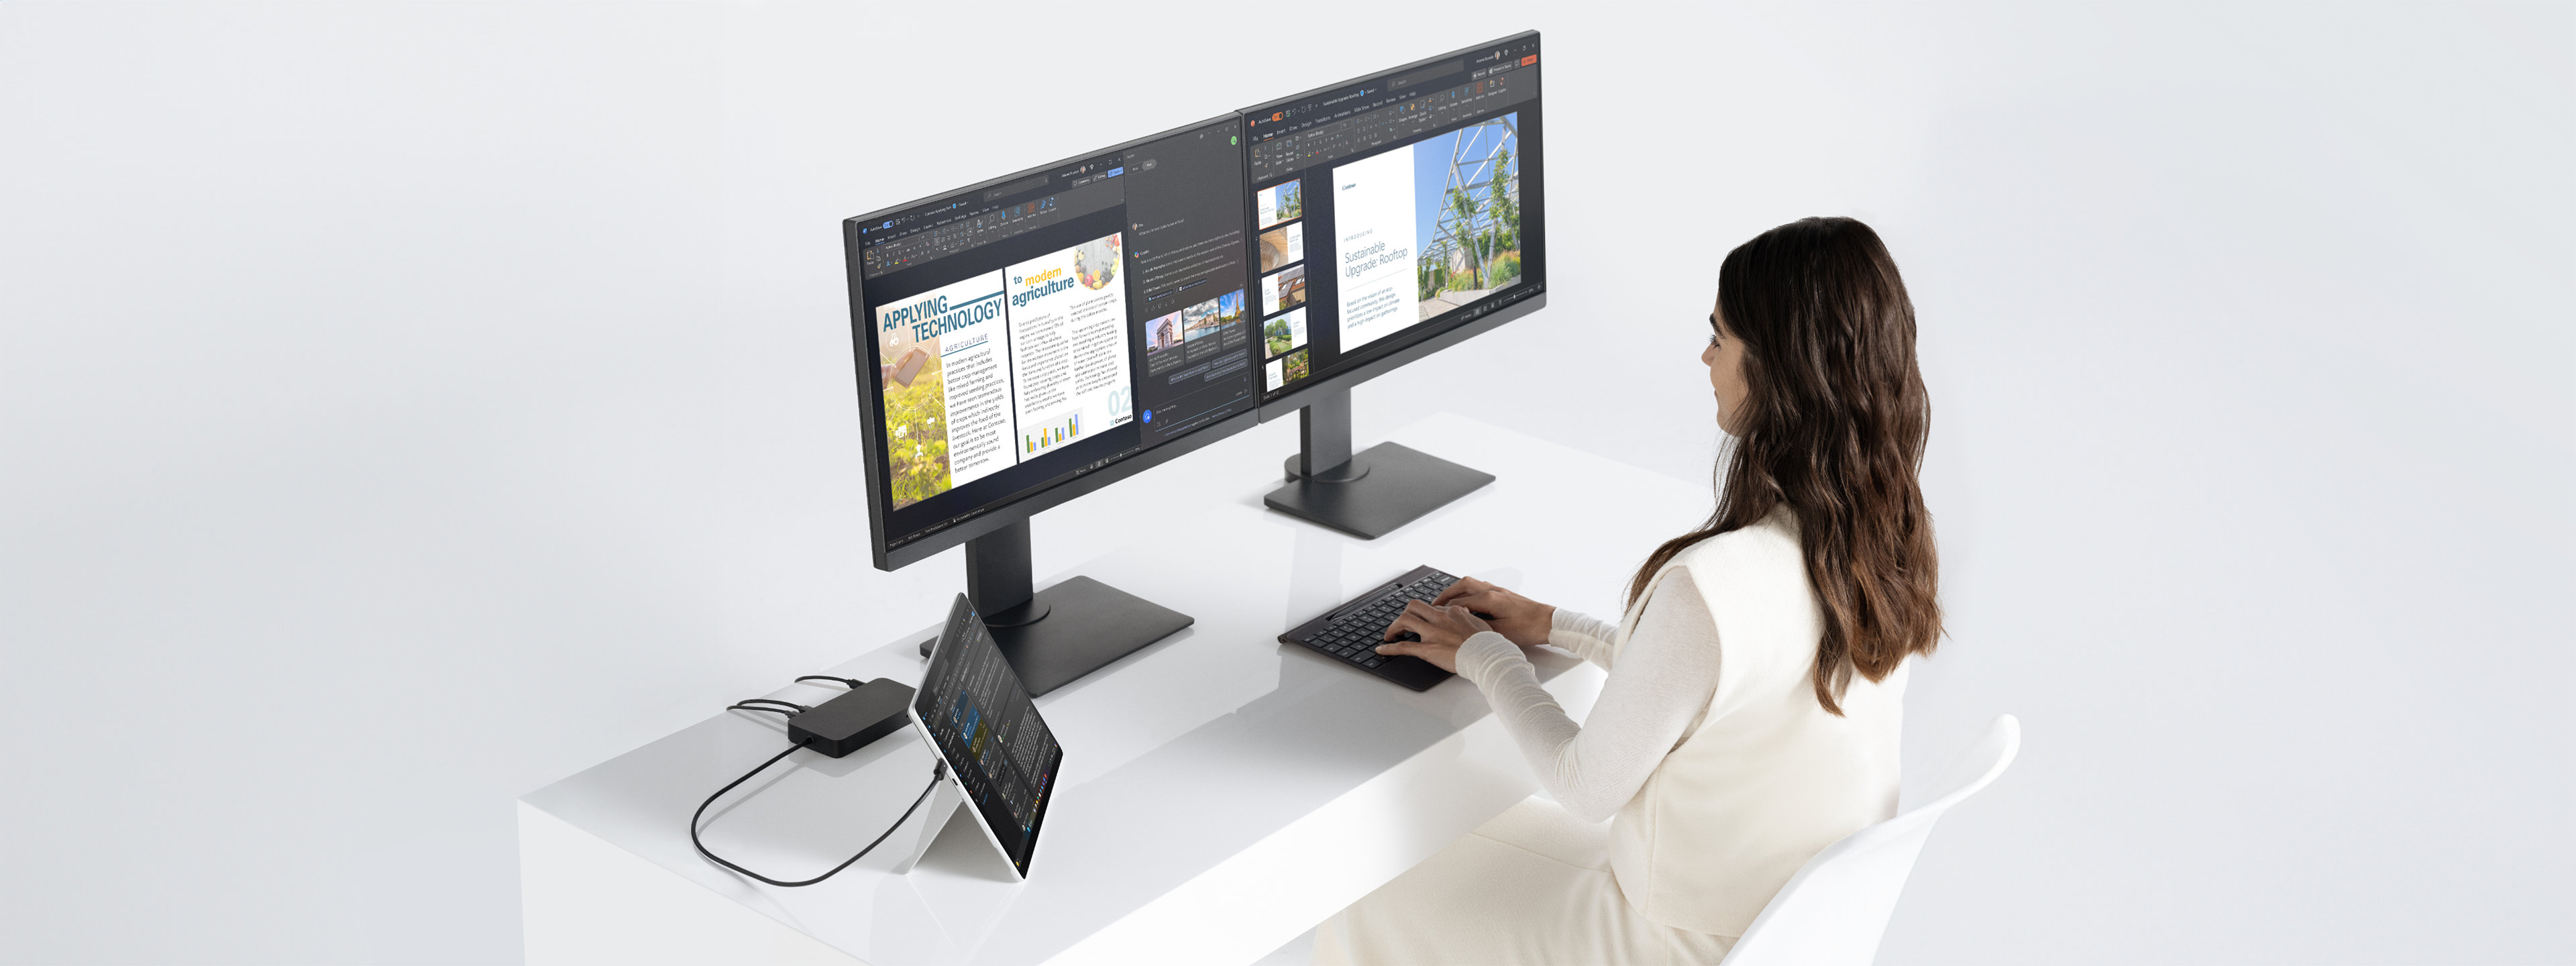 一名女性坐在桌前，她在工作時，讓 Surface Pro 裝置採用支架模式並透過擴充座連接兩台螢幕。